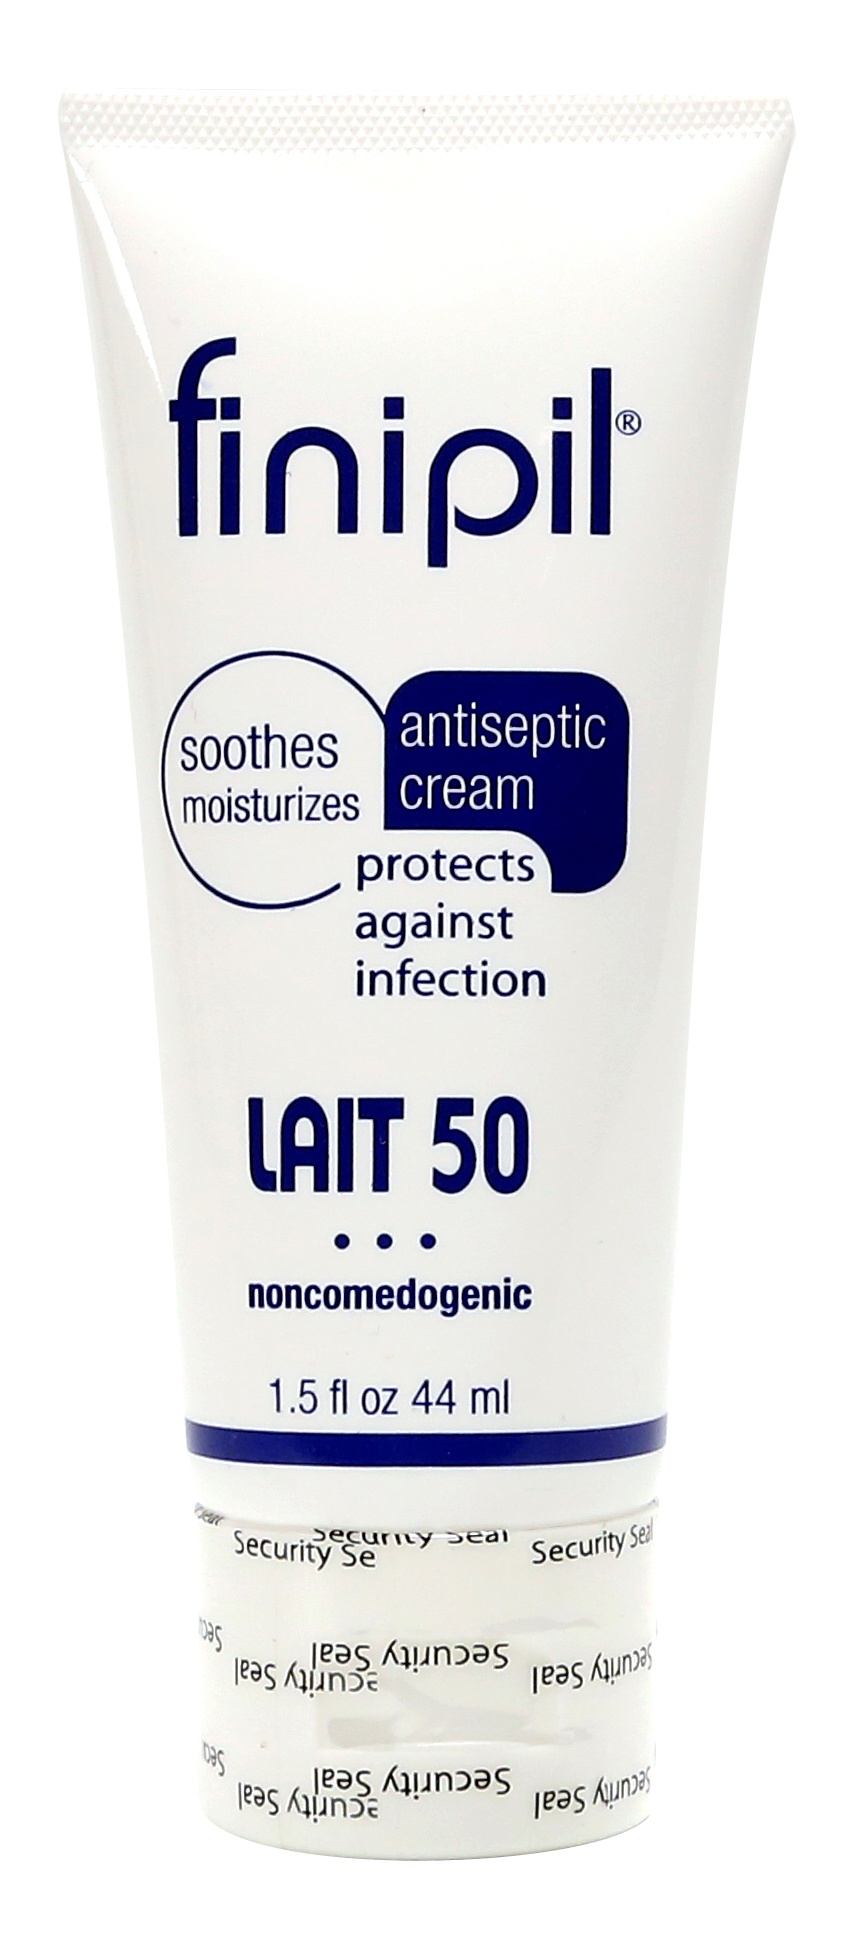 FINIPIL Lait 50 Antiseptic Cream